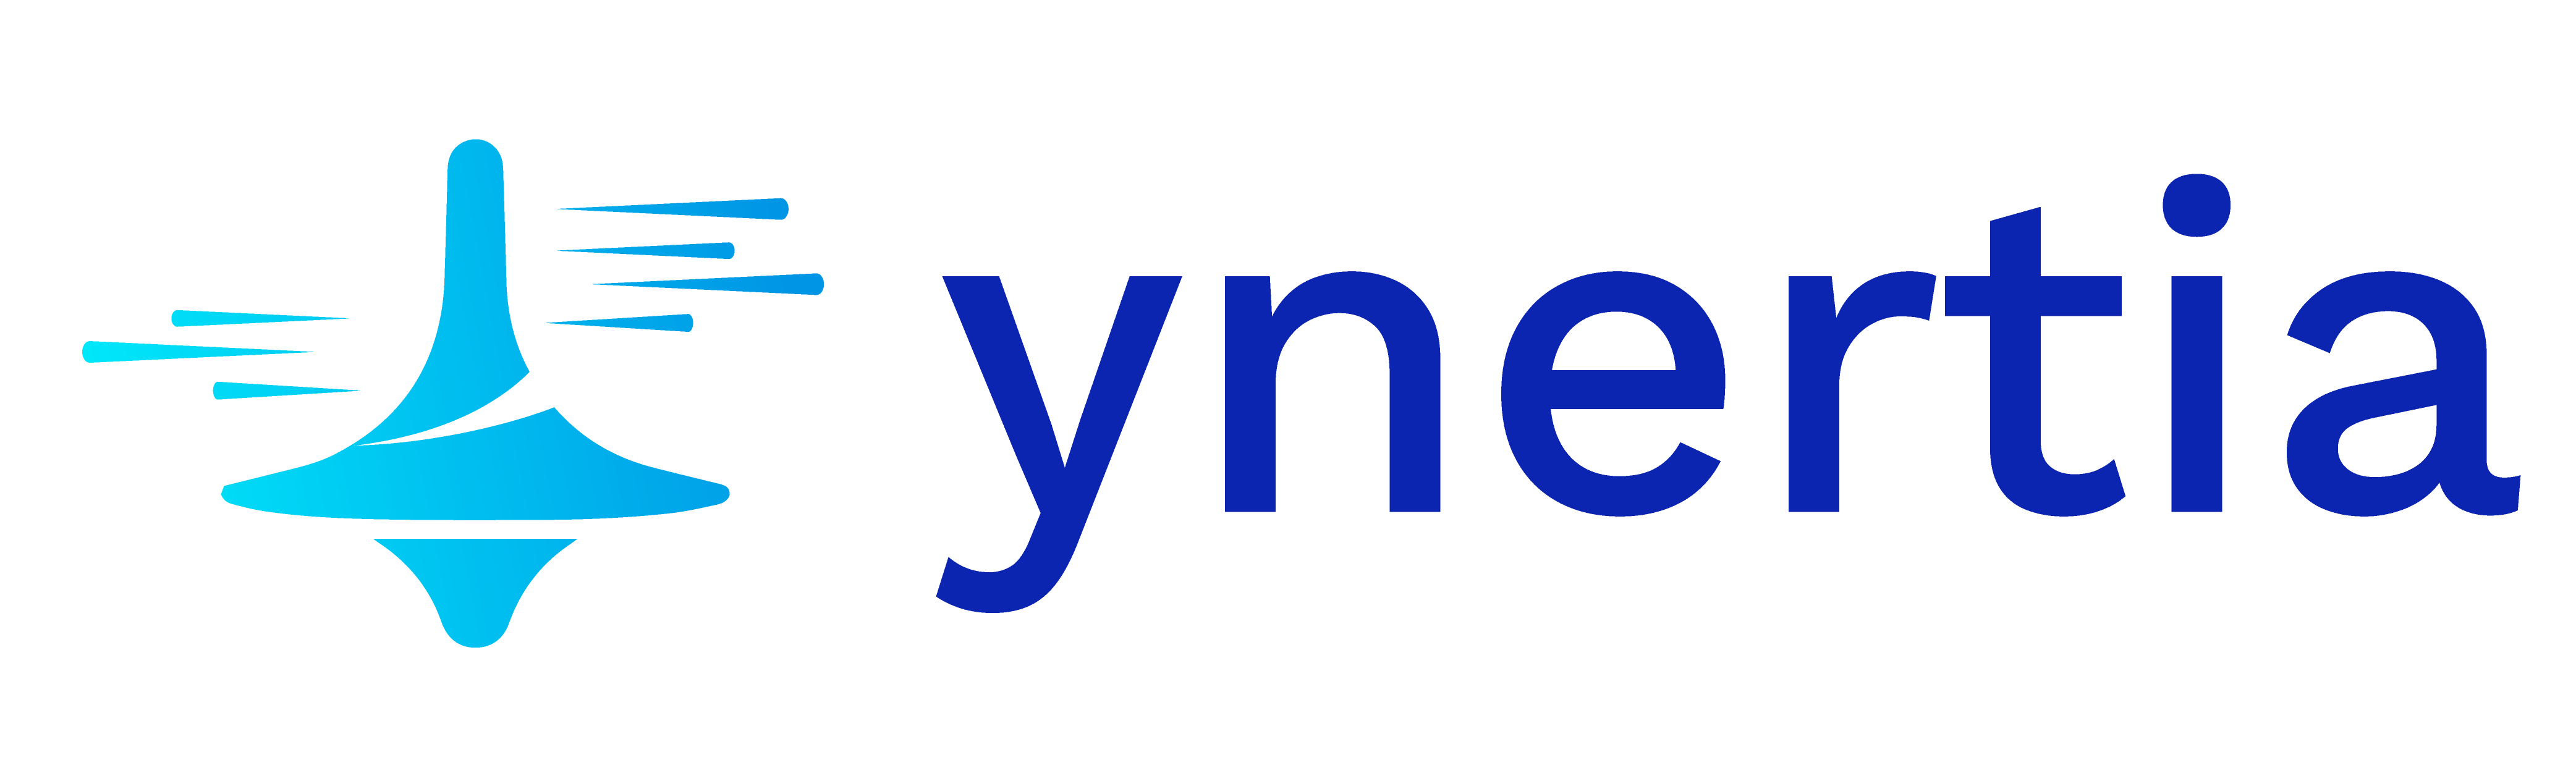 Ynertia.net